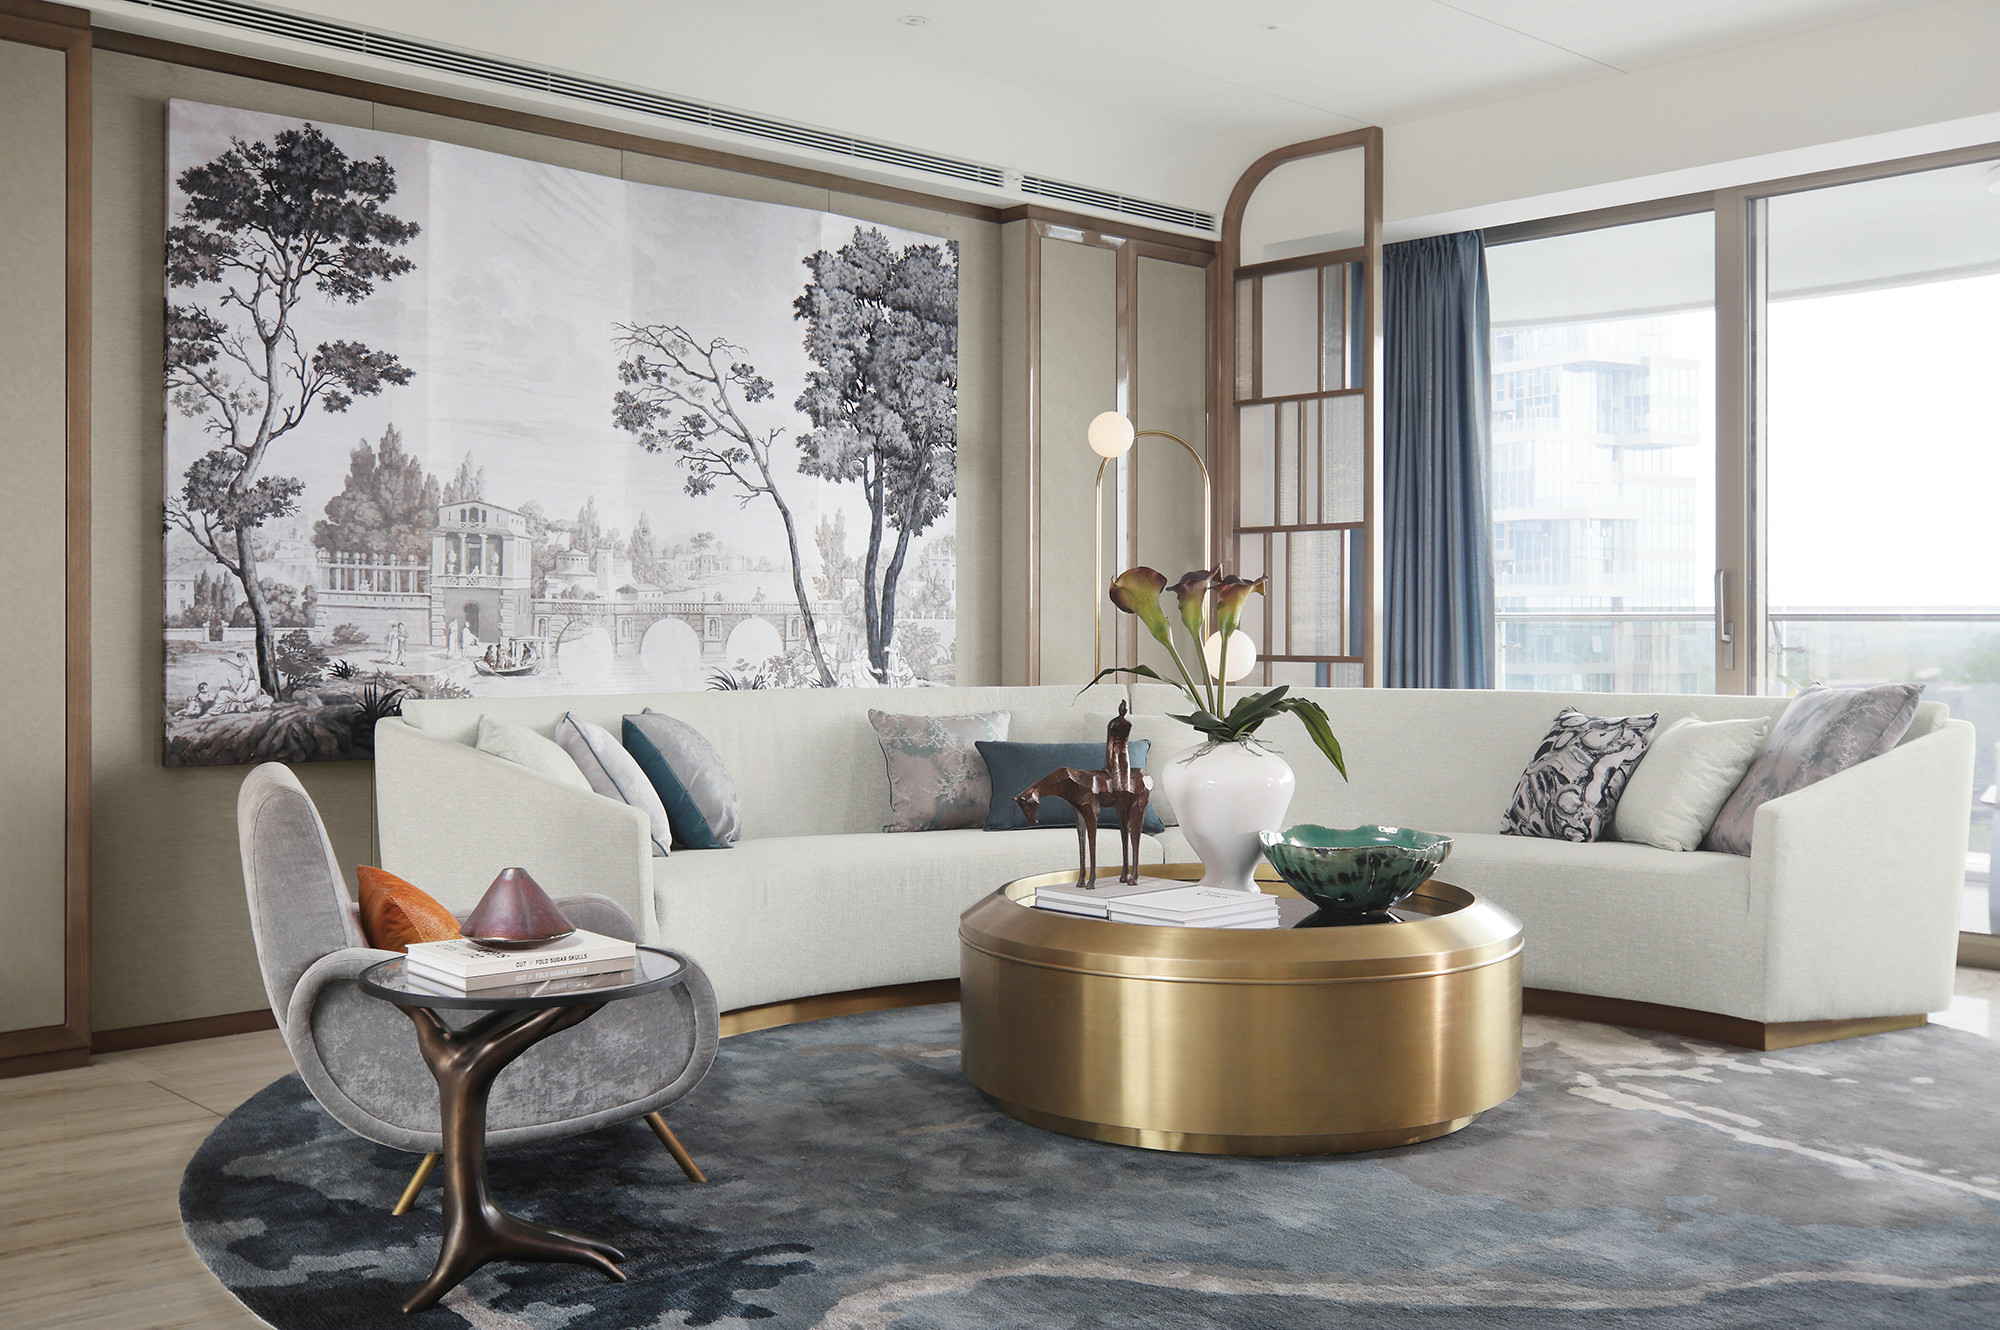 客厅配色素雅，白色布艺沙发环形布局，创造出聚拢式氛围，尽显华贵之美。